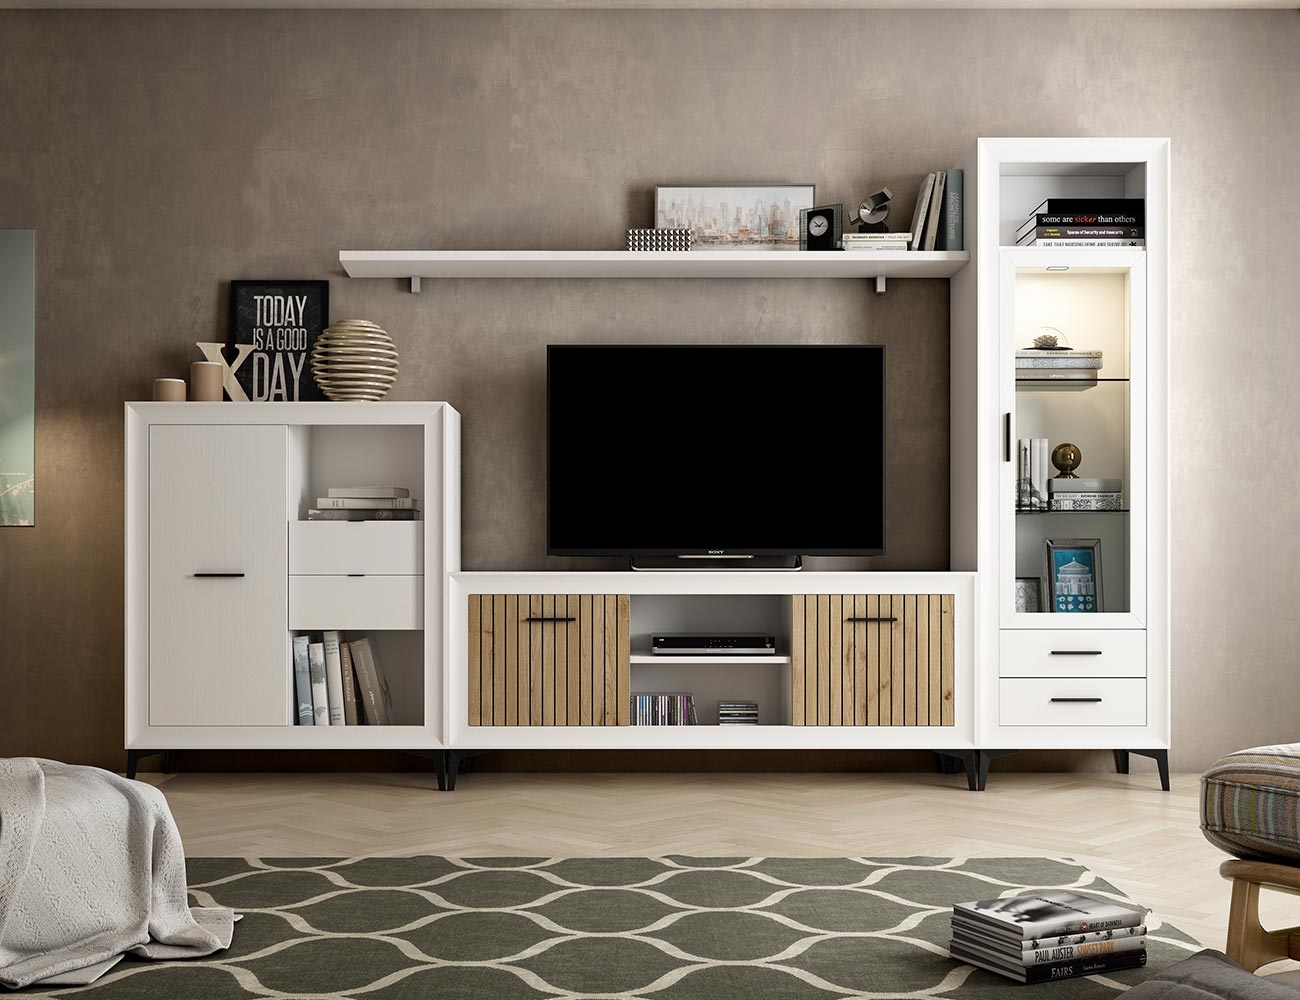 Mueble de salón de 200 cm. acabado Lacado blanco brillo y gris de estilo  nórdico urbano muy actual